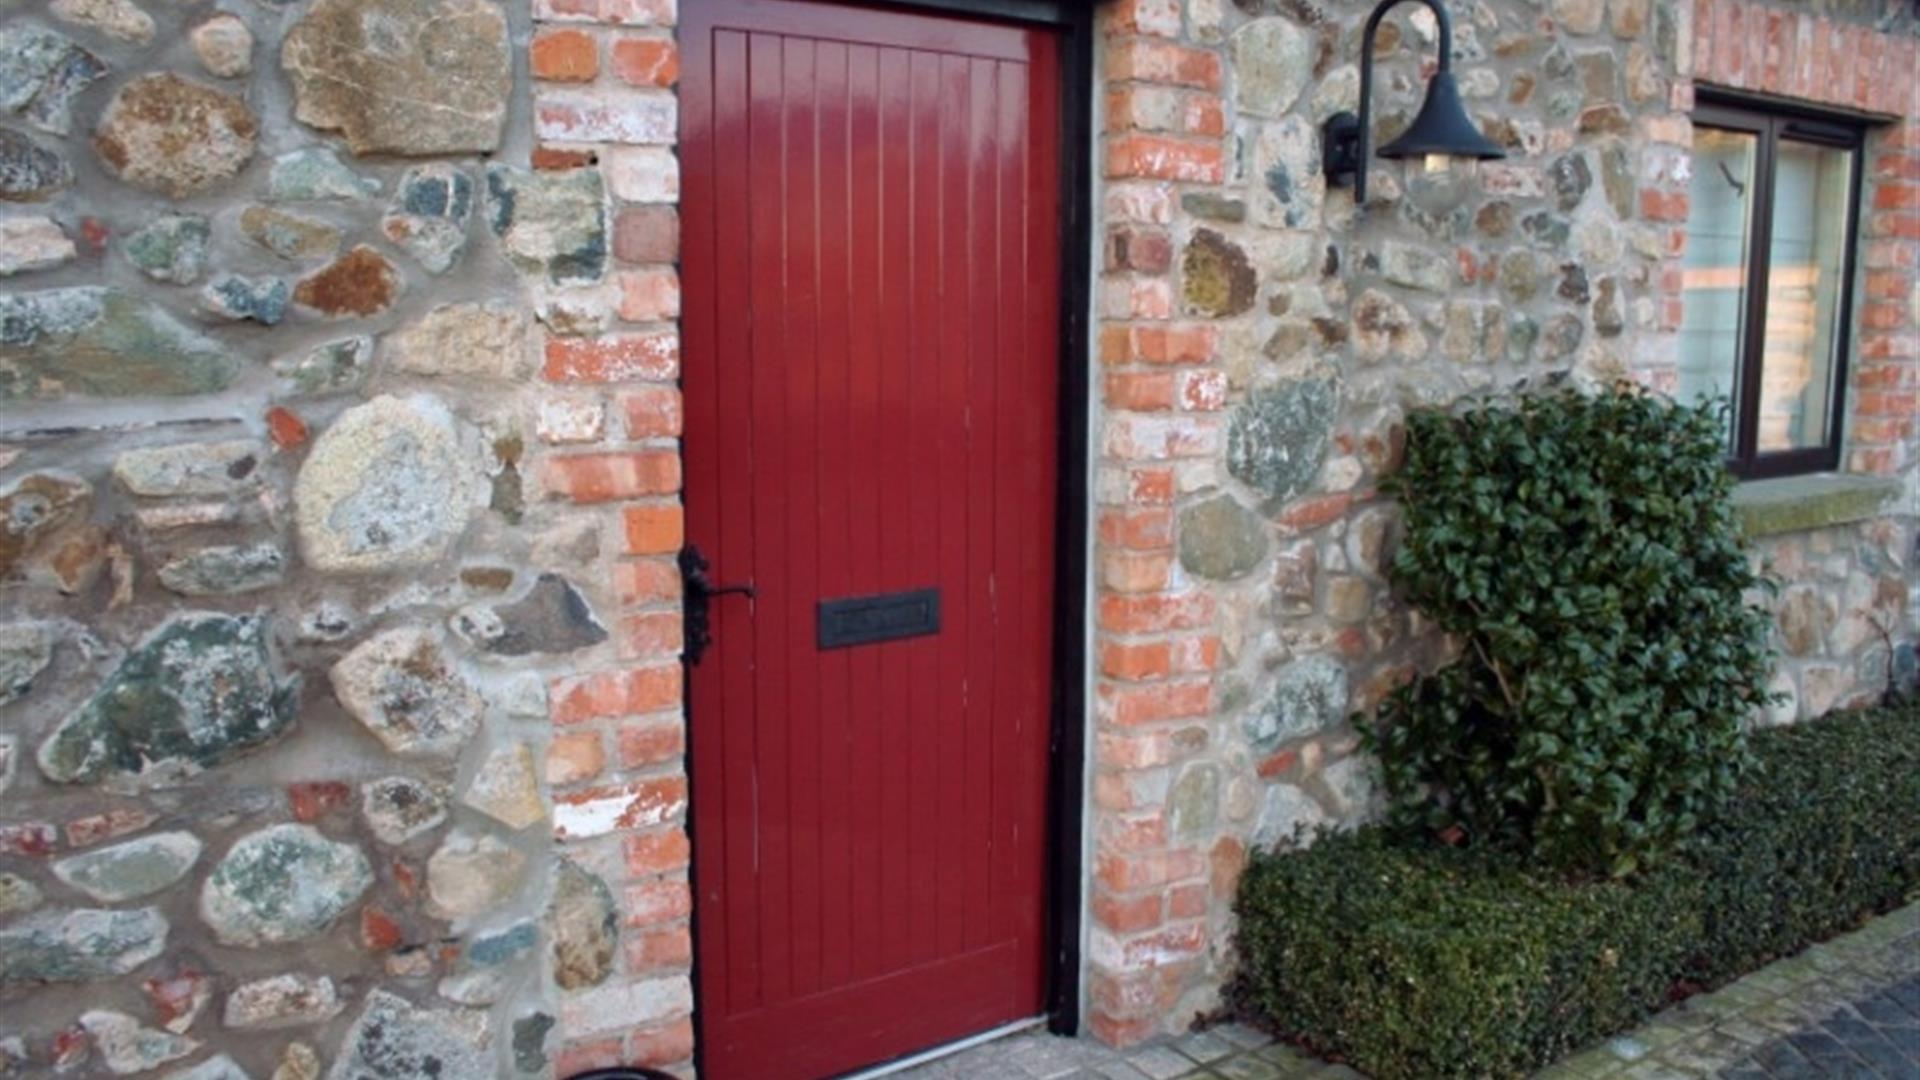 Image of a red door